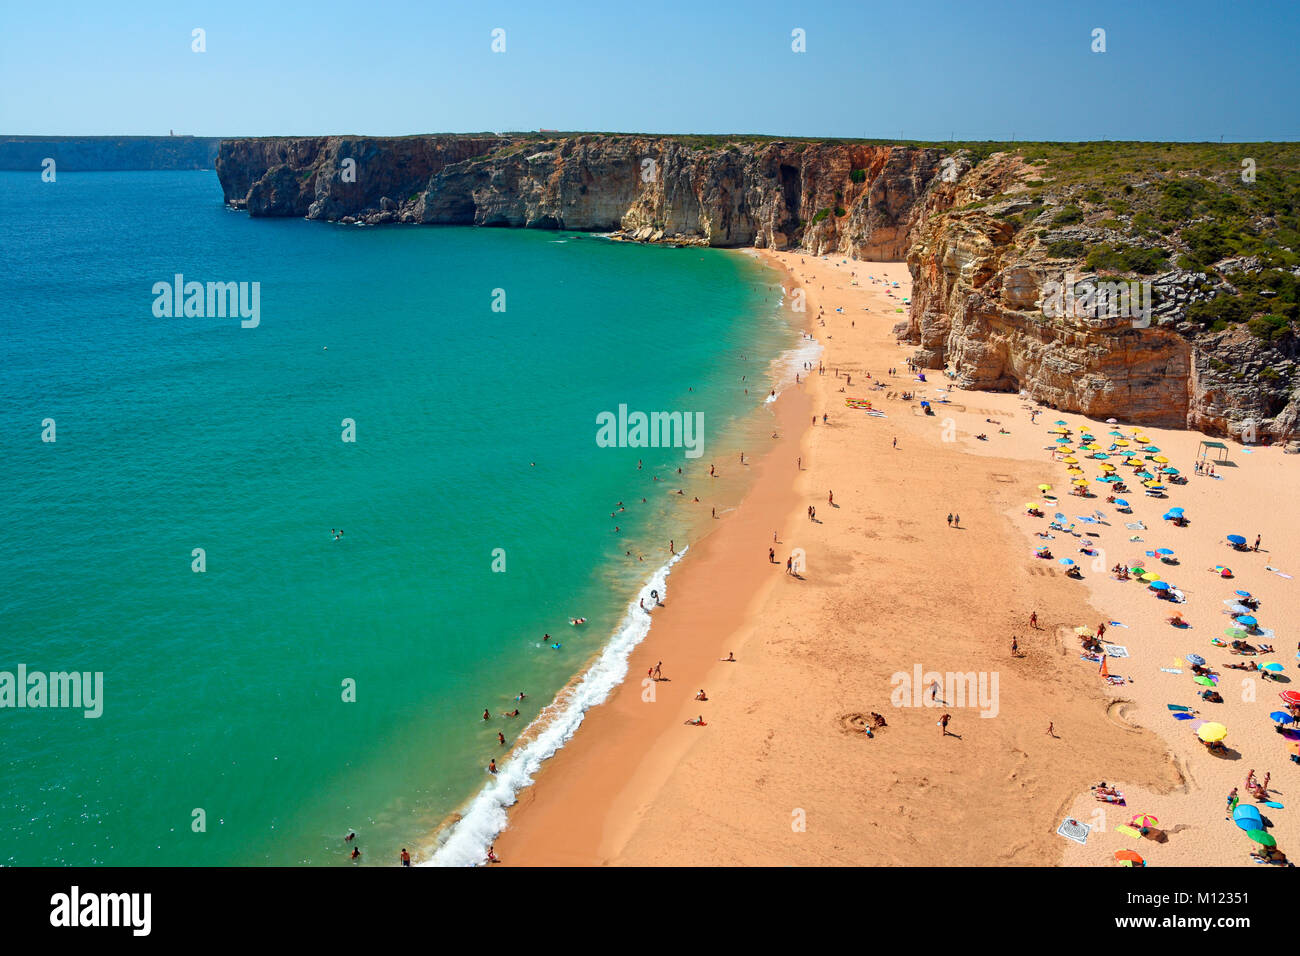 Praia do Beliche,Sagres,Algarve,Portugal Stock Photo